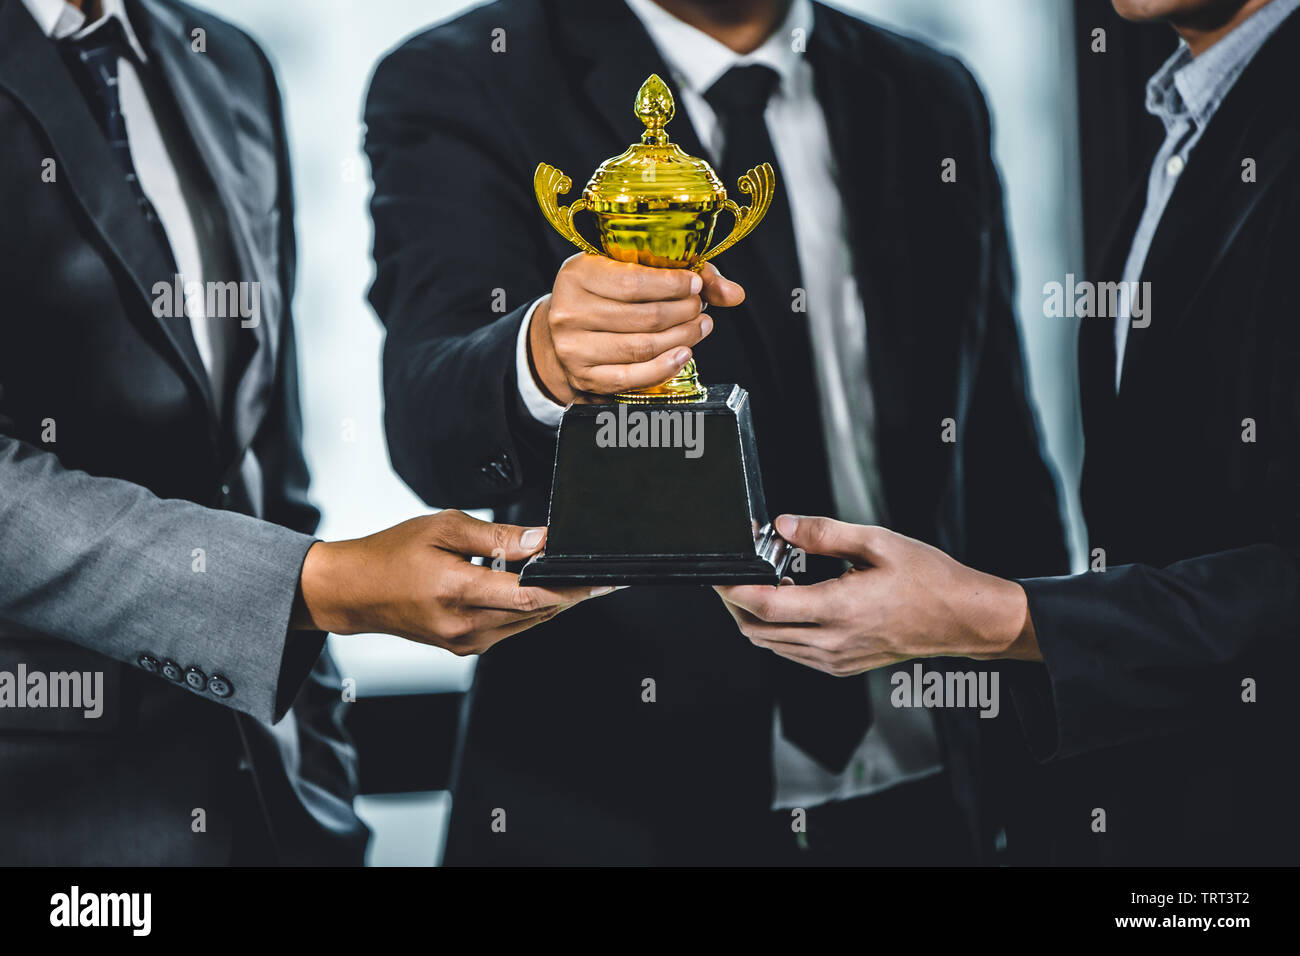 Business Team gewinnen oder erfolgreiche Konzept, Gruppe der Geschäftsmann holding Gold Cup Sieger Stockfoto